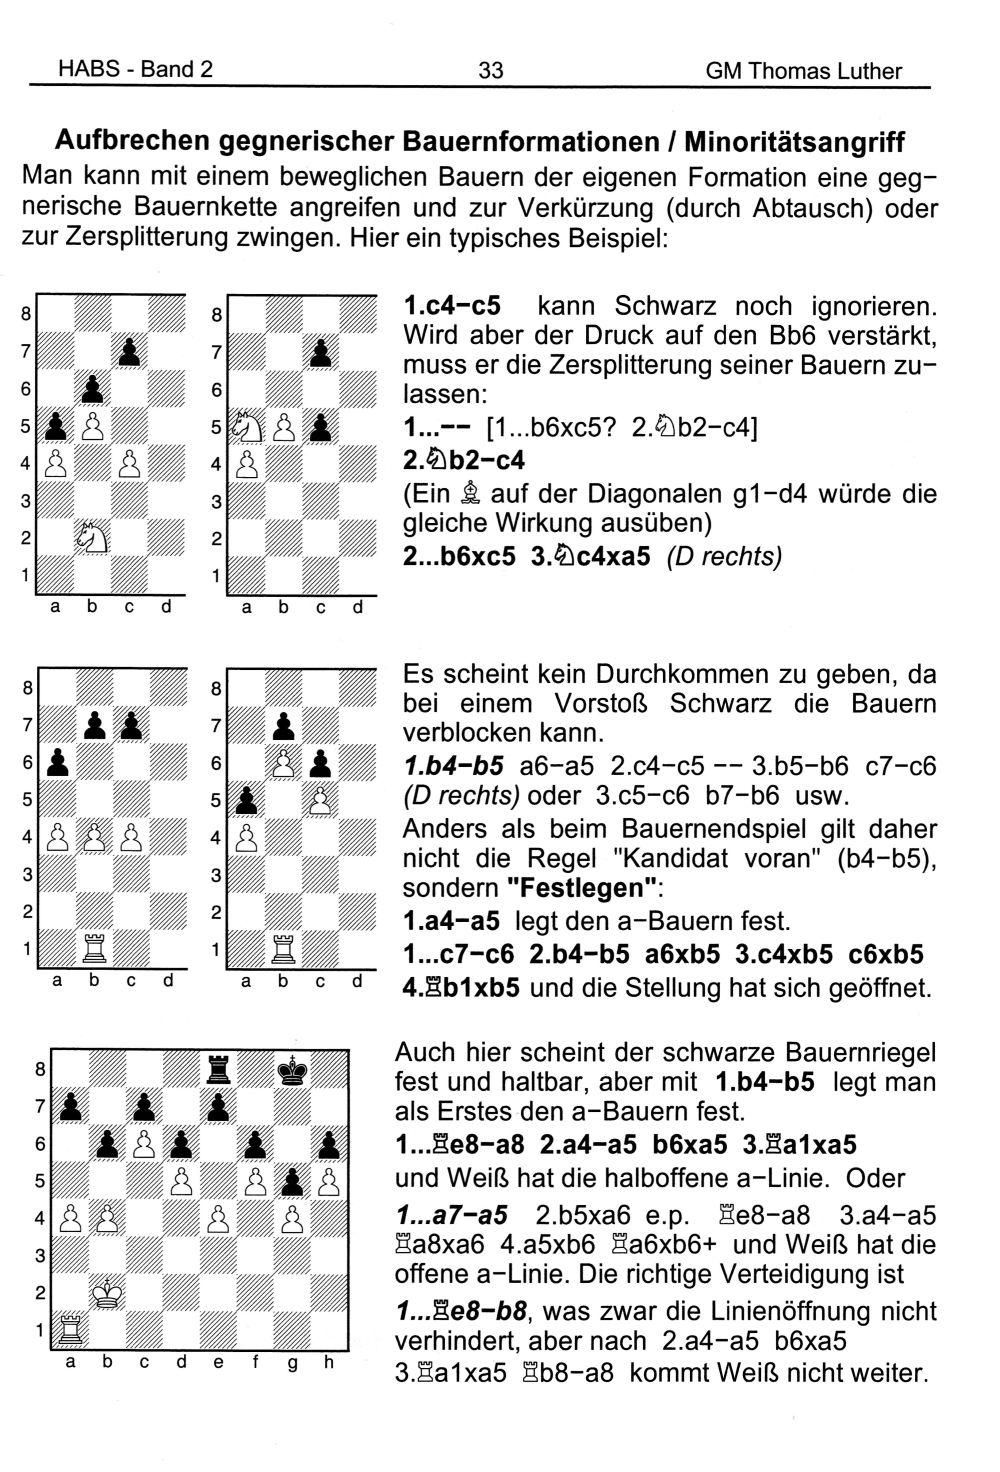 Thomas Luther - Handbuch und Arbeitsbuch für den Schachtrainer - Band 1-3 - Strategie - Rezensionen GLAREAN MAGAZIN